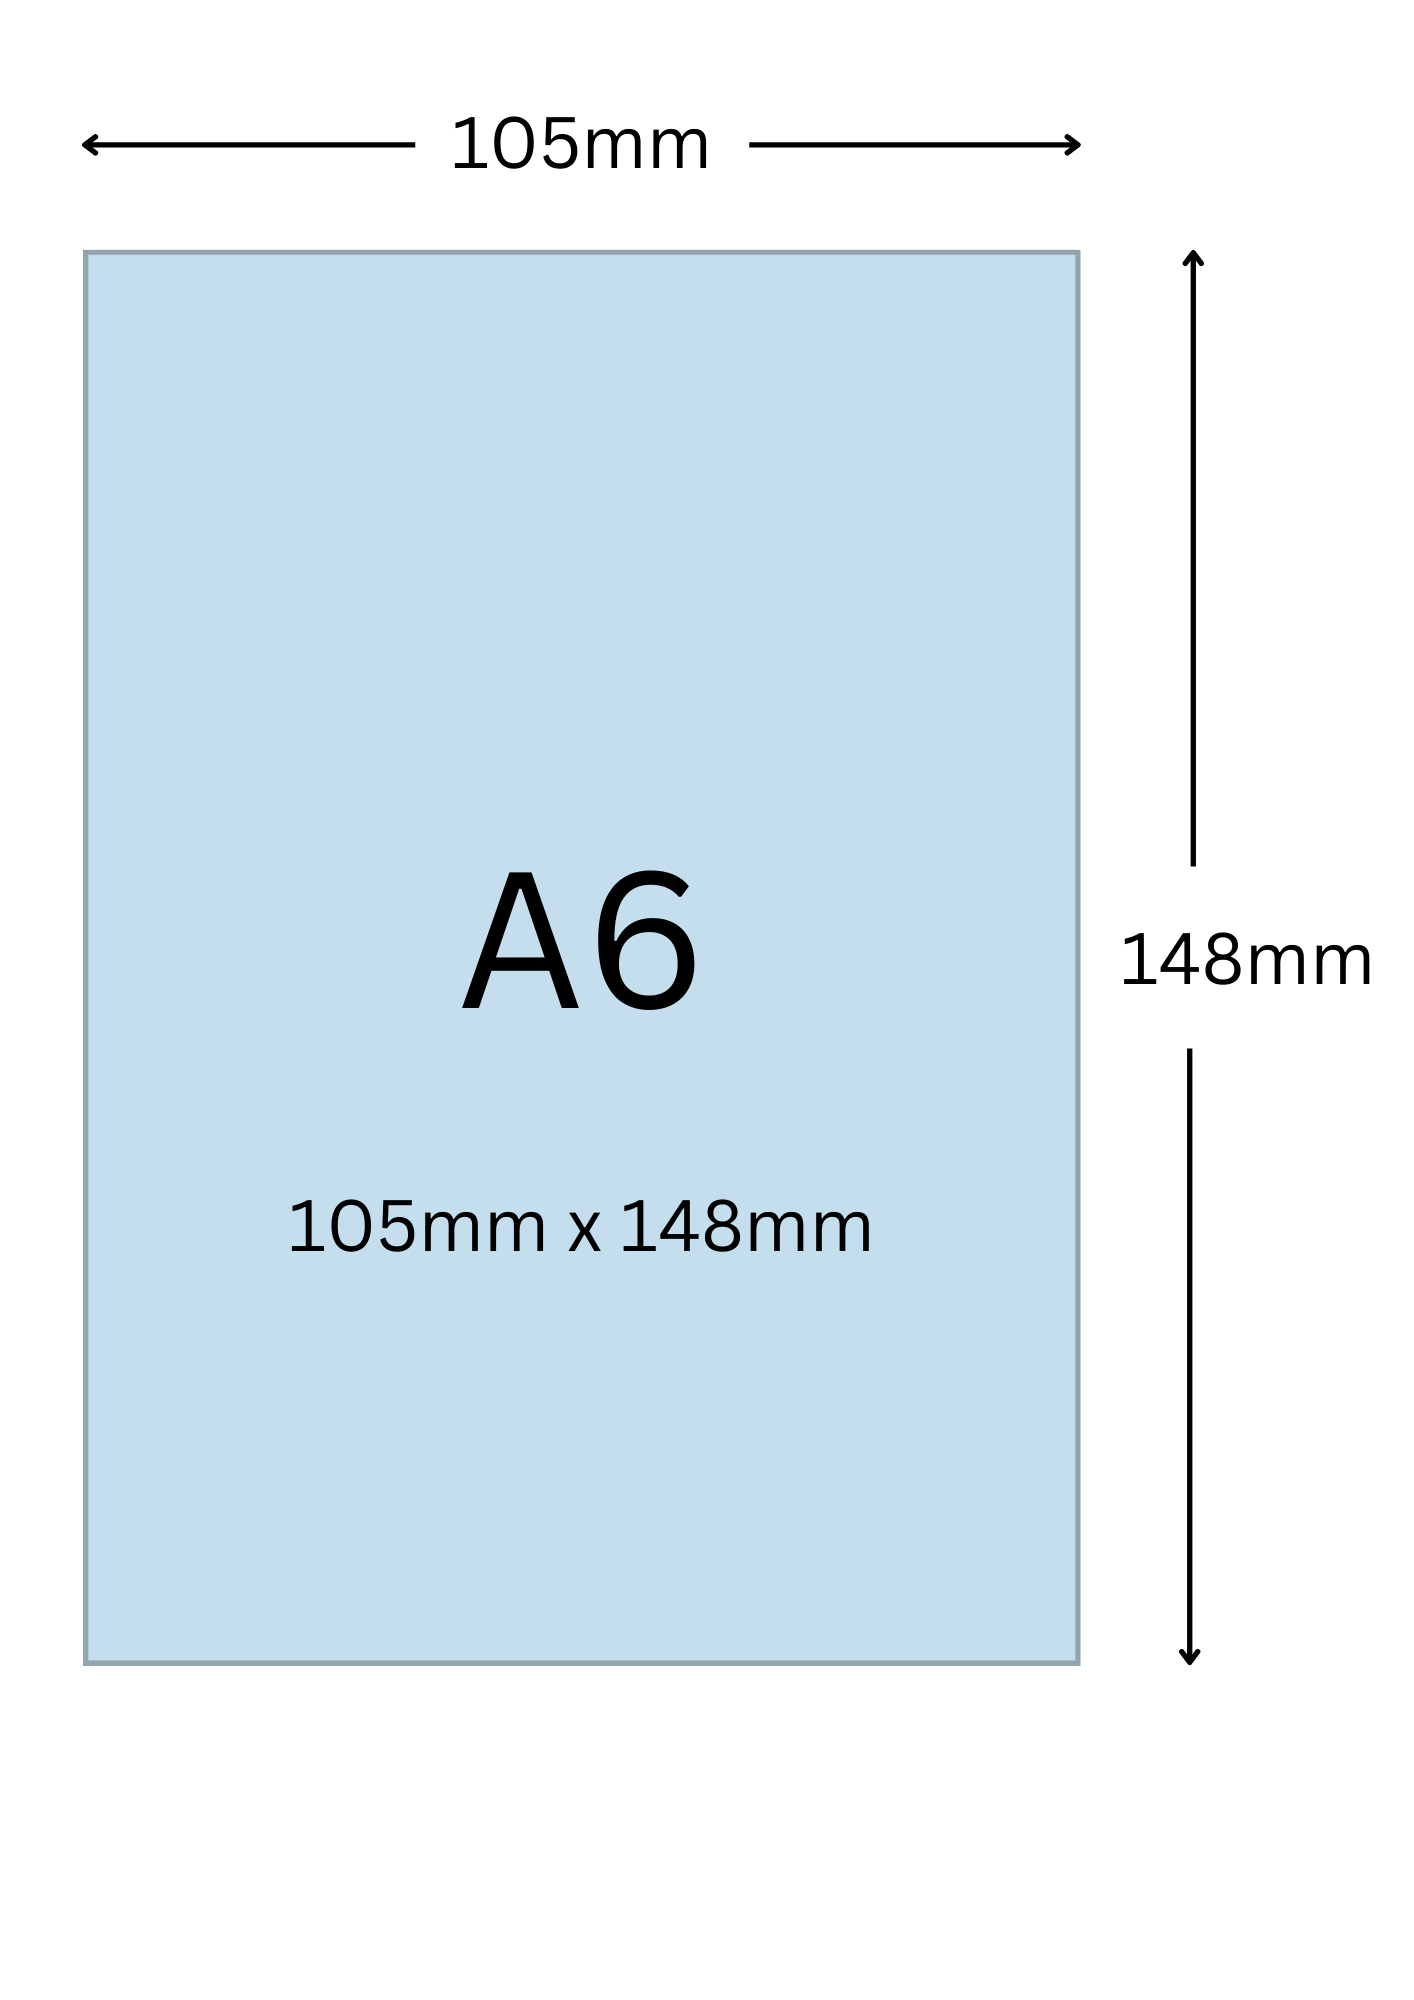 A6尺寸公分, A6紙張尺寸大小, A6紙張對應開數是幾開